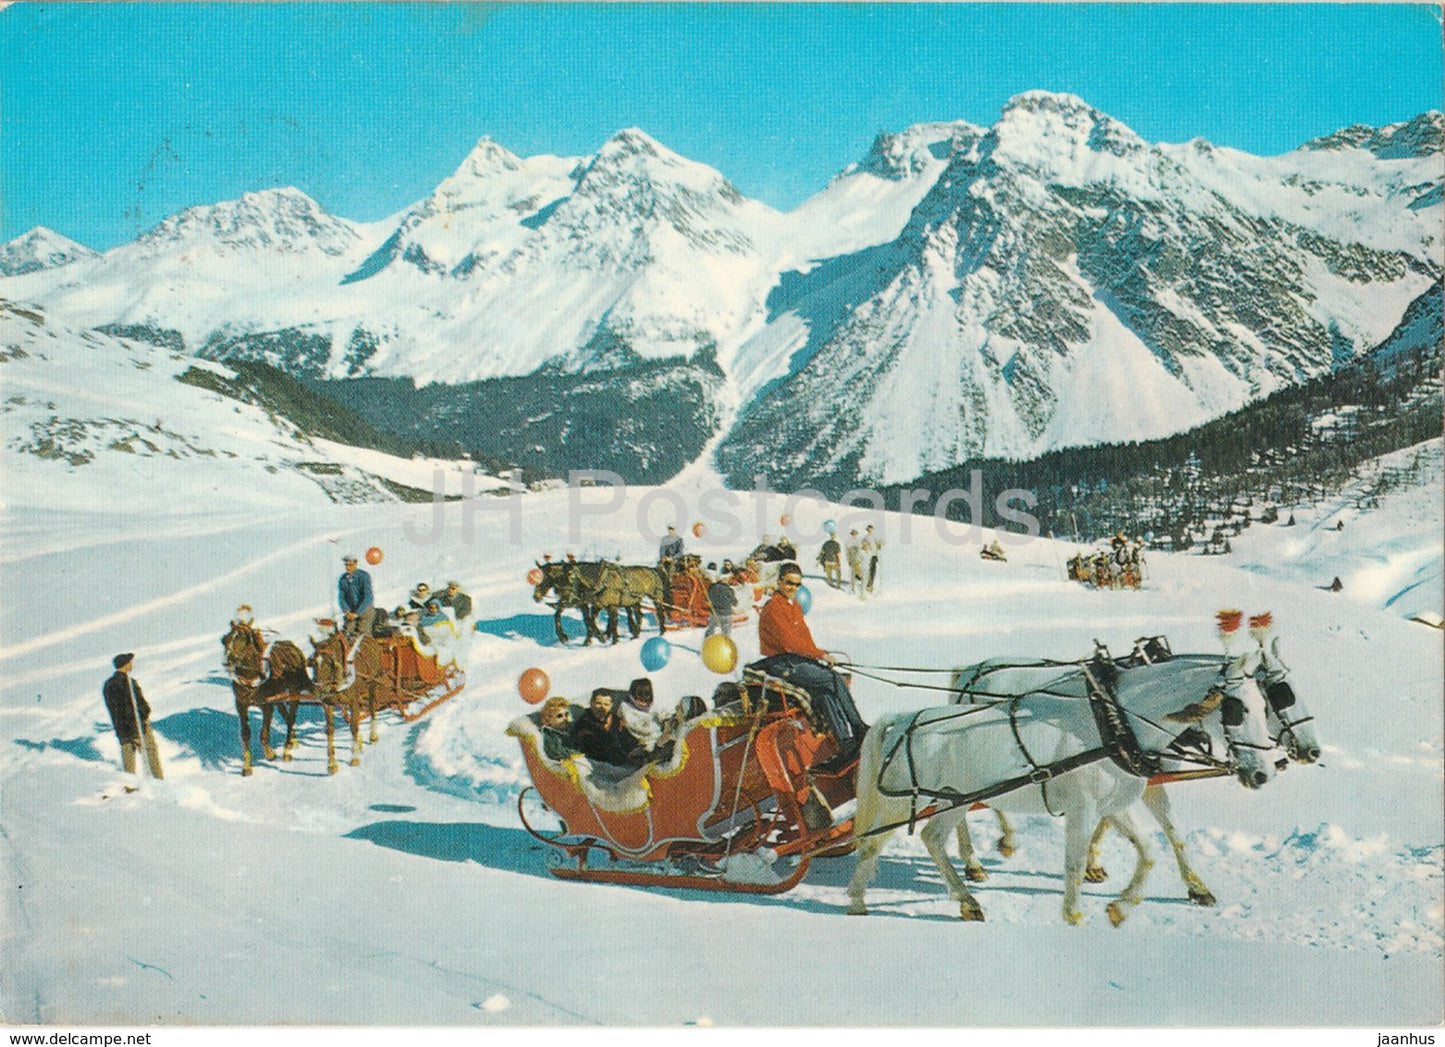 Schlittenpartie - horse sledge - 1981 - Switzerland - used - JH Postcards